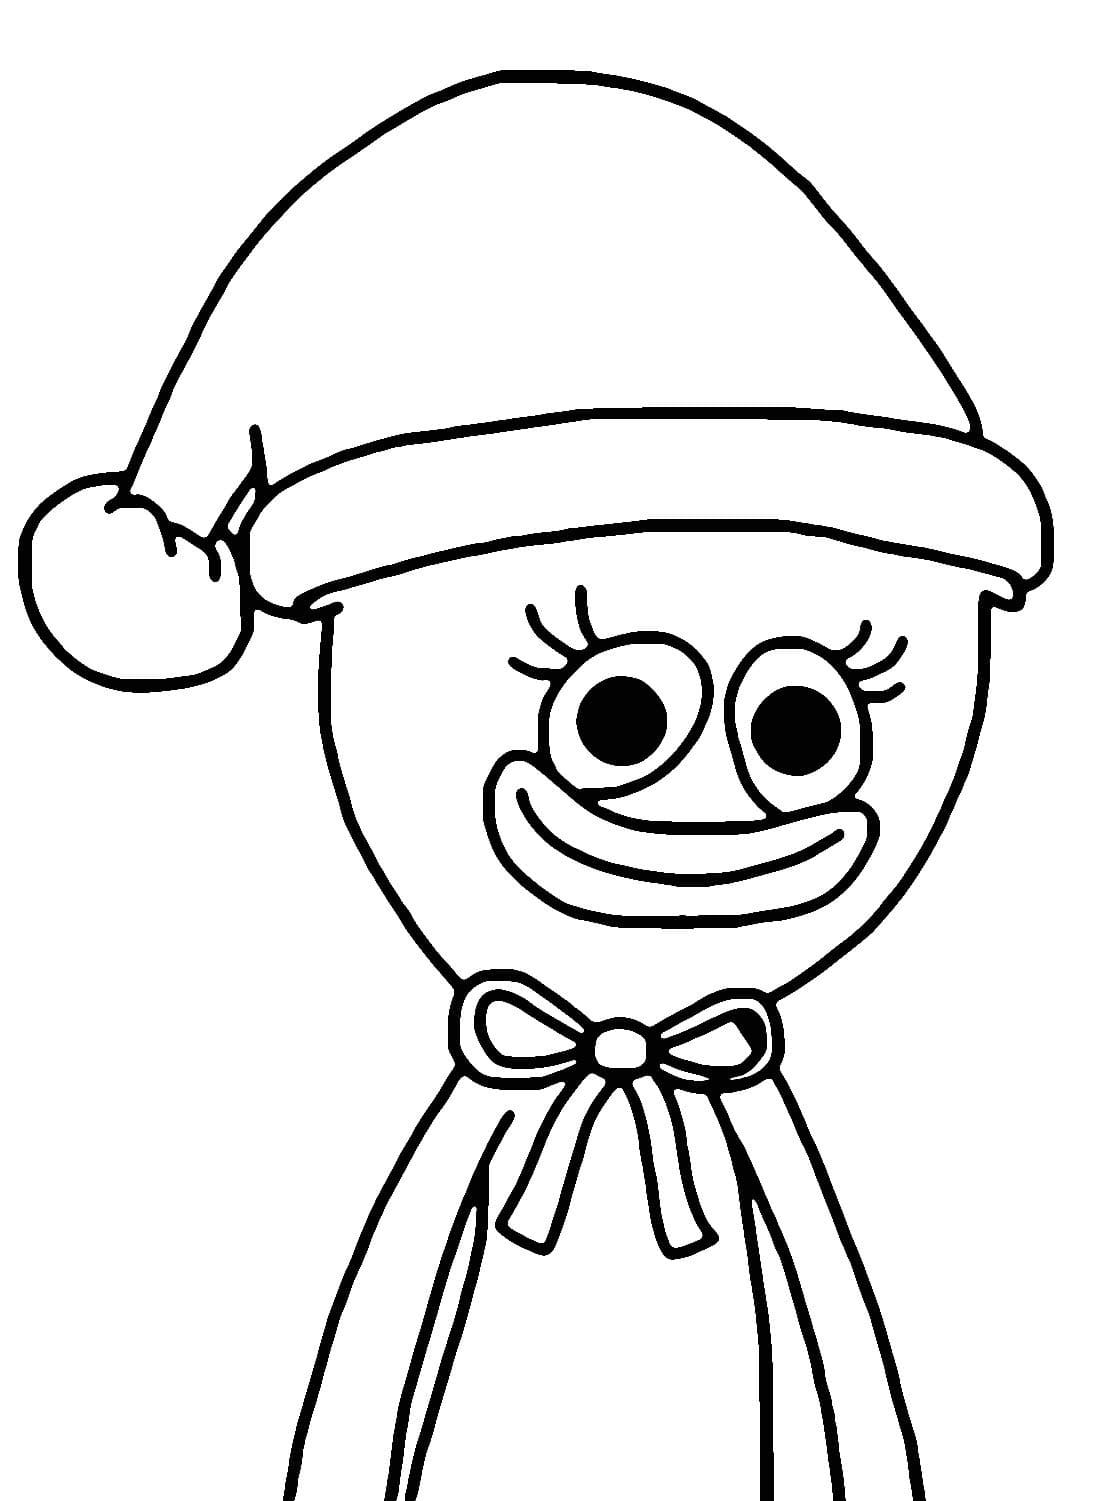 كيسي ميسي مع قبعة سانتا تلوين